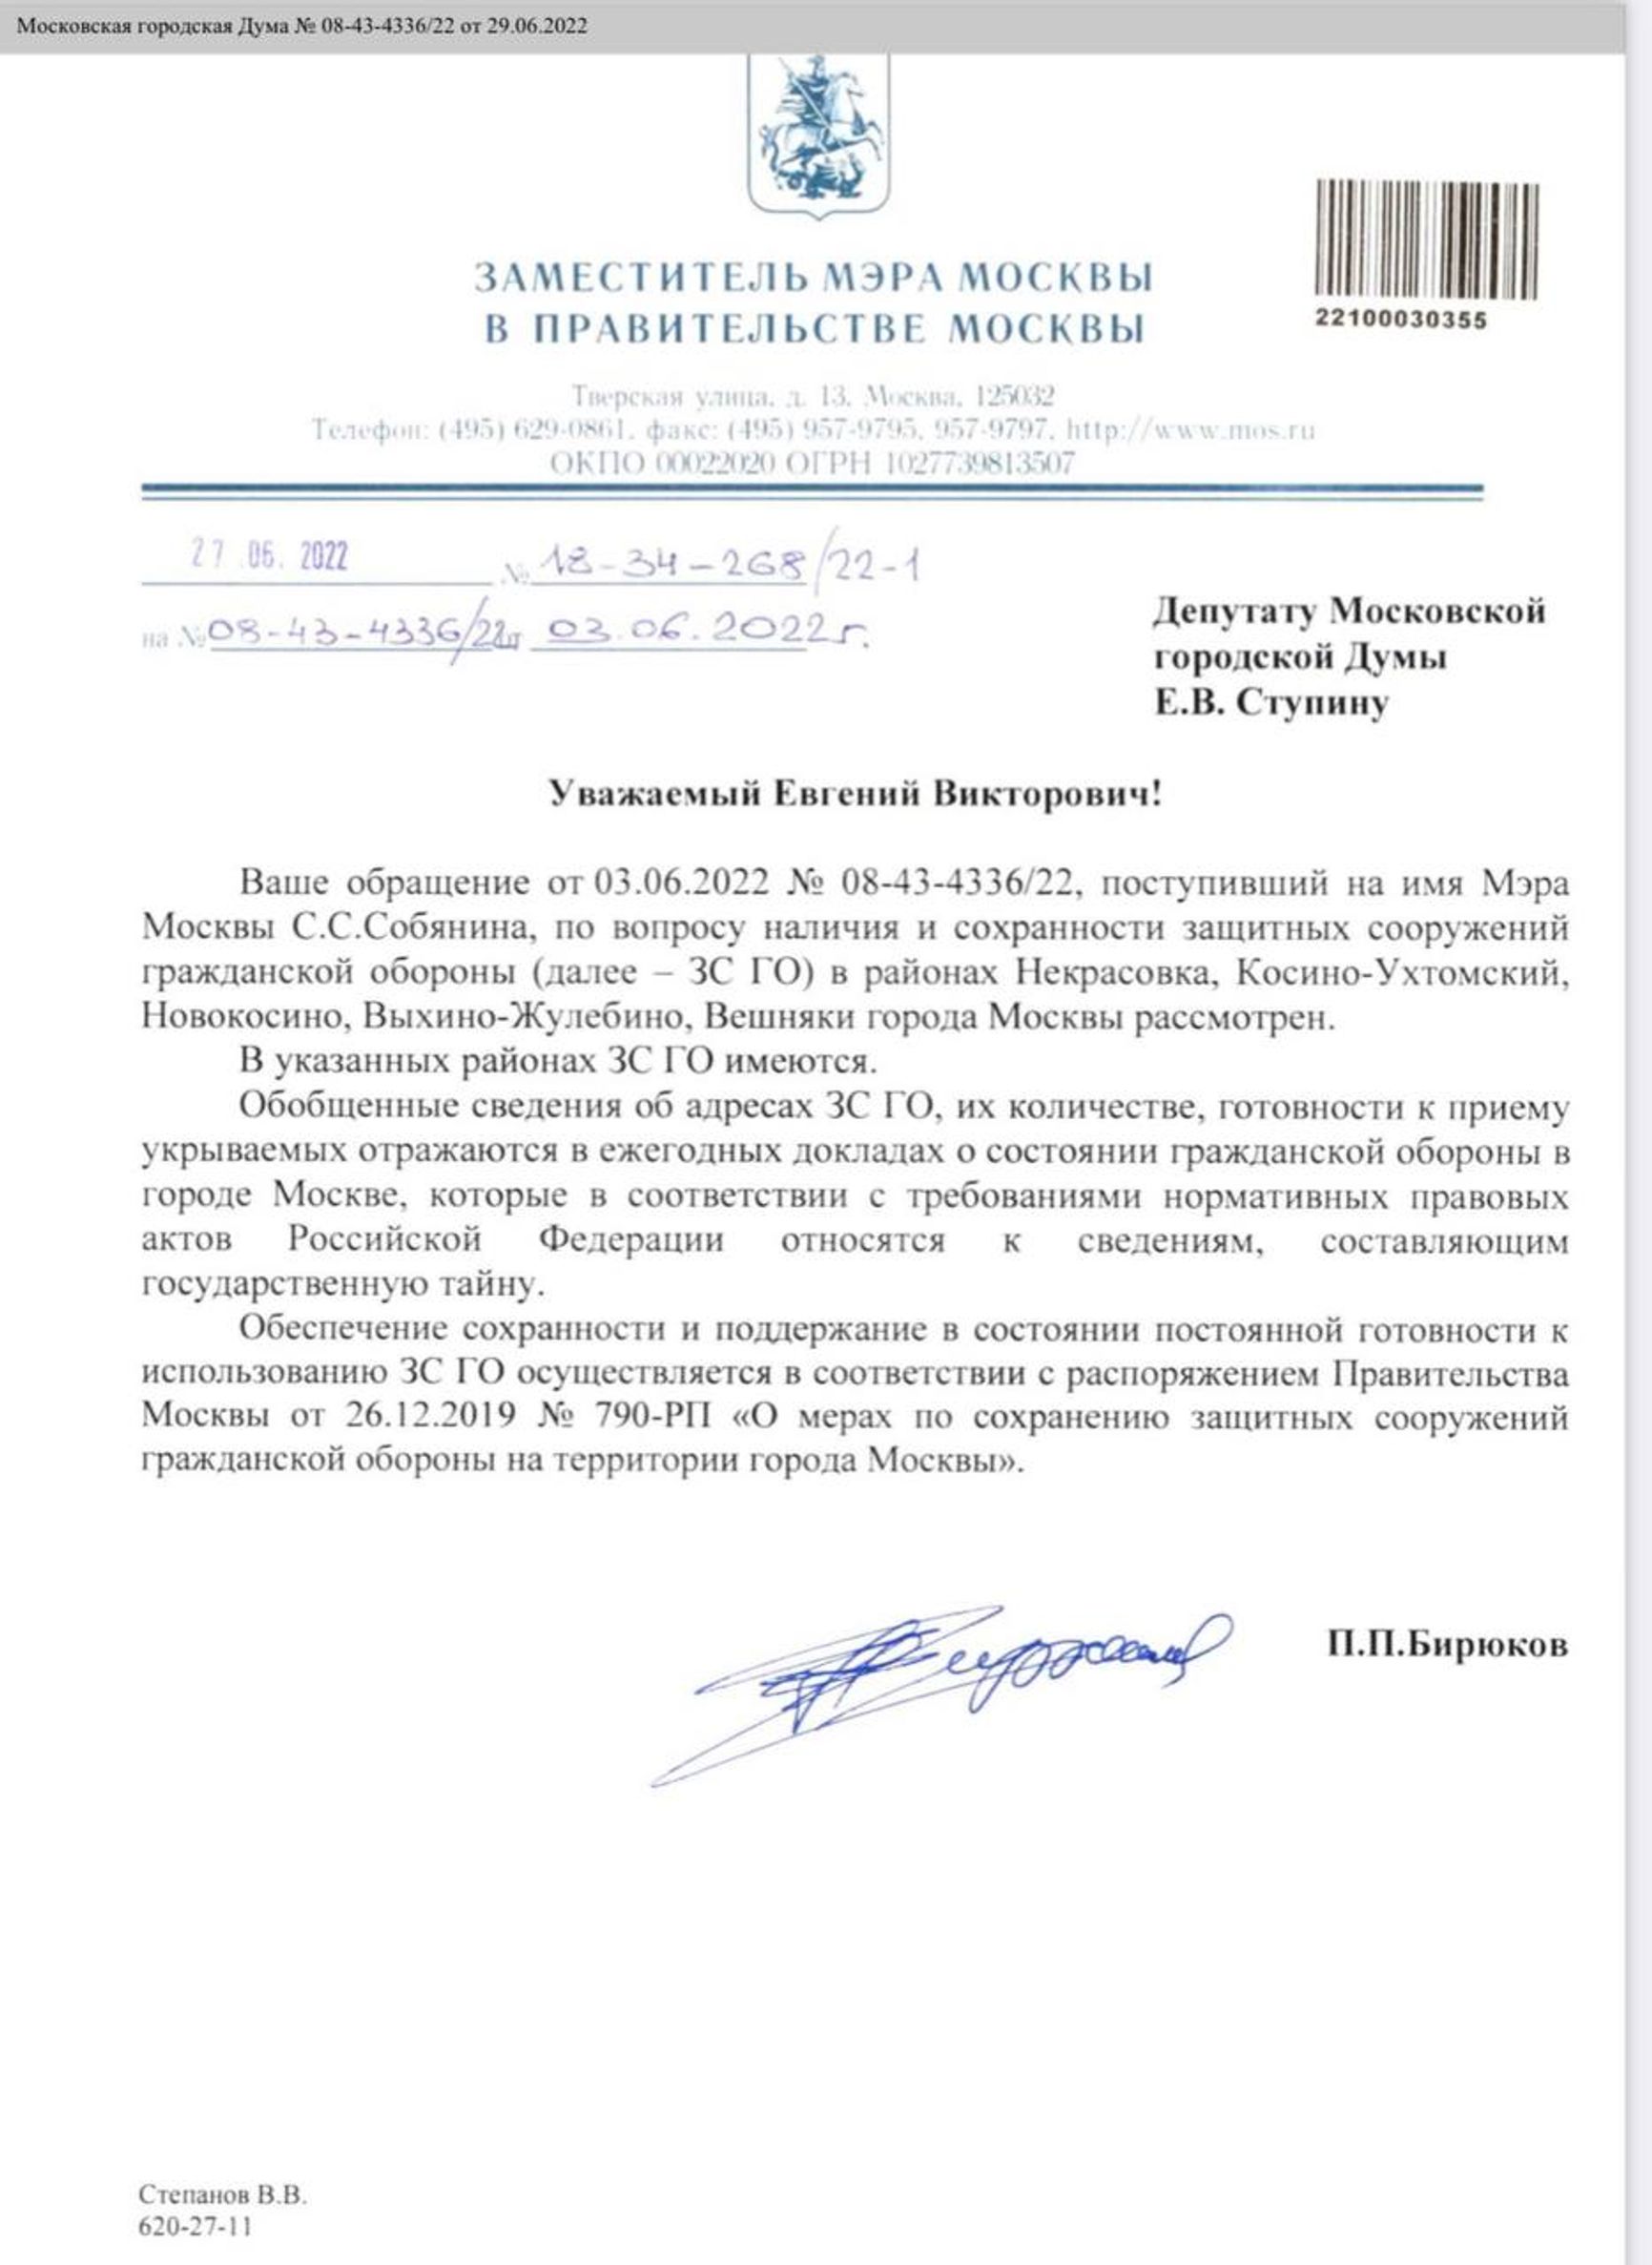 Адреса бомбоубежищ в Москве на случай ядерного удара являются «государственной тайной» — заммэра Петр Бирюков